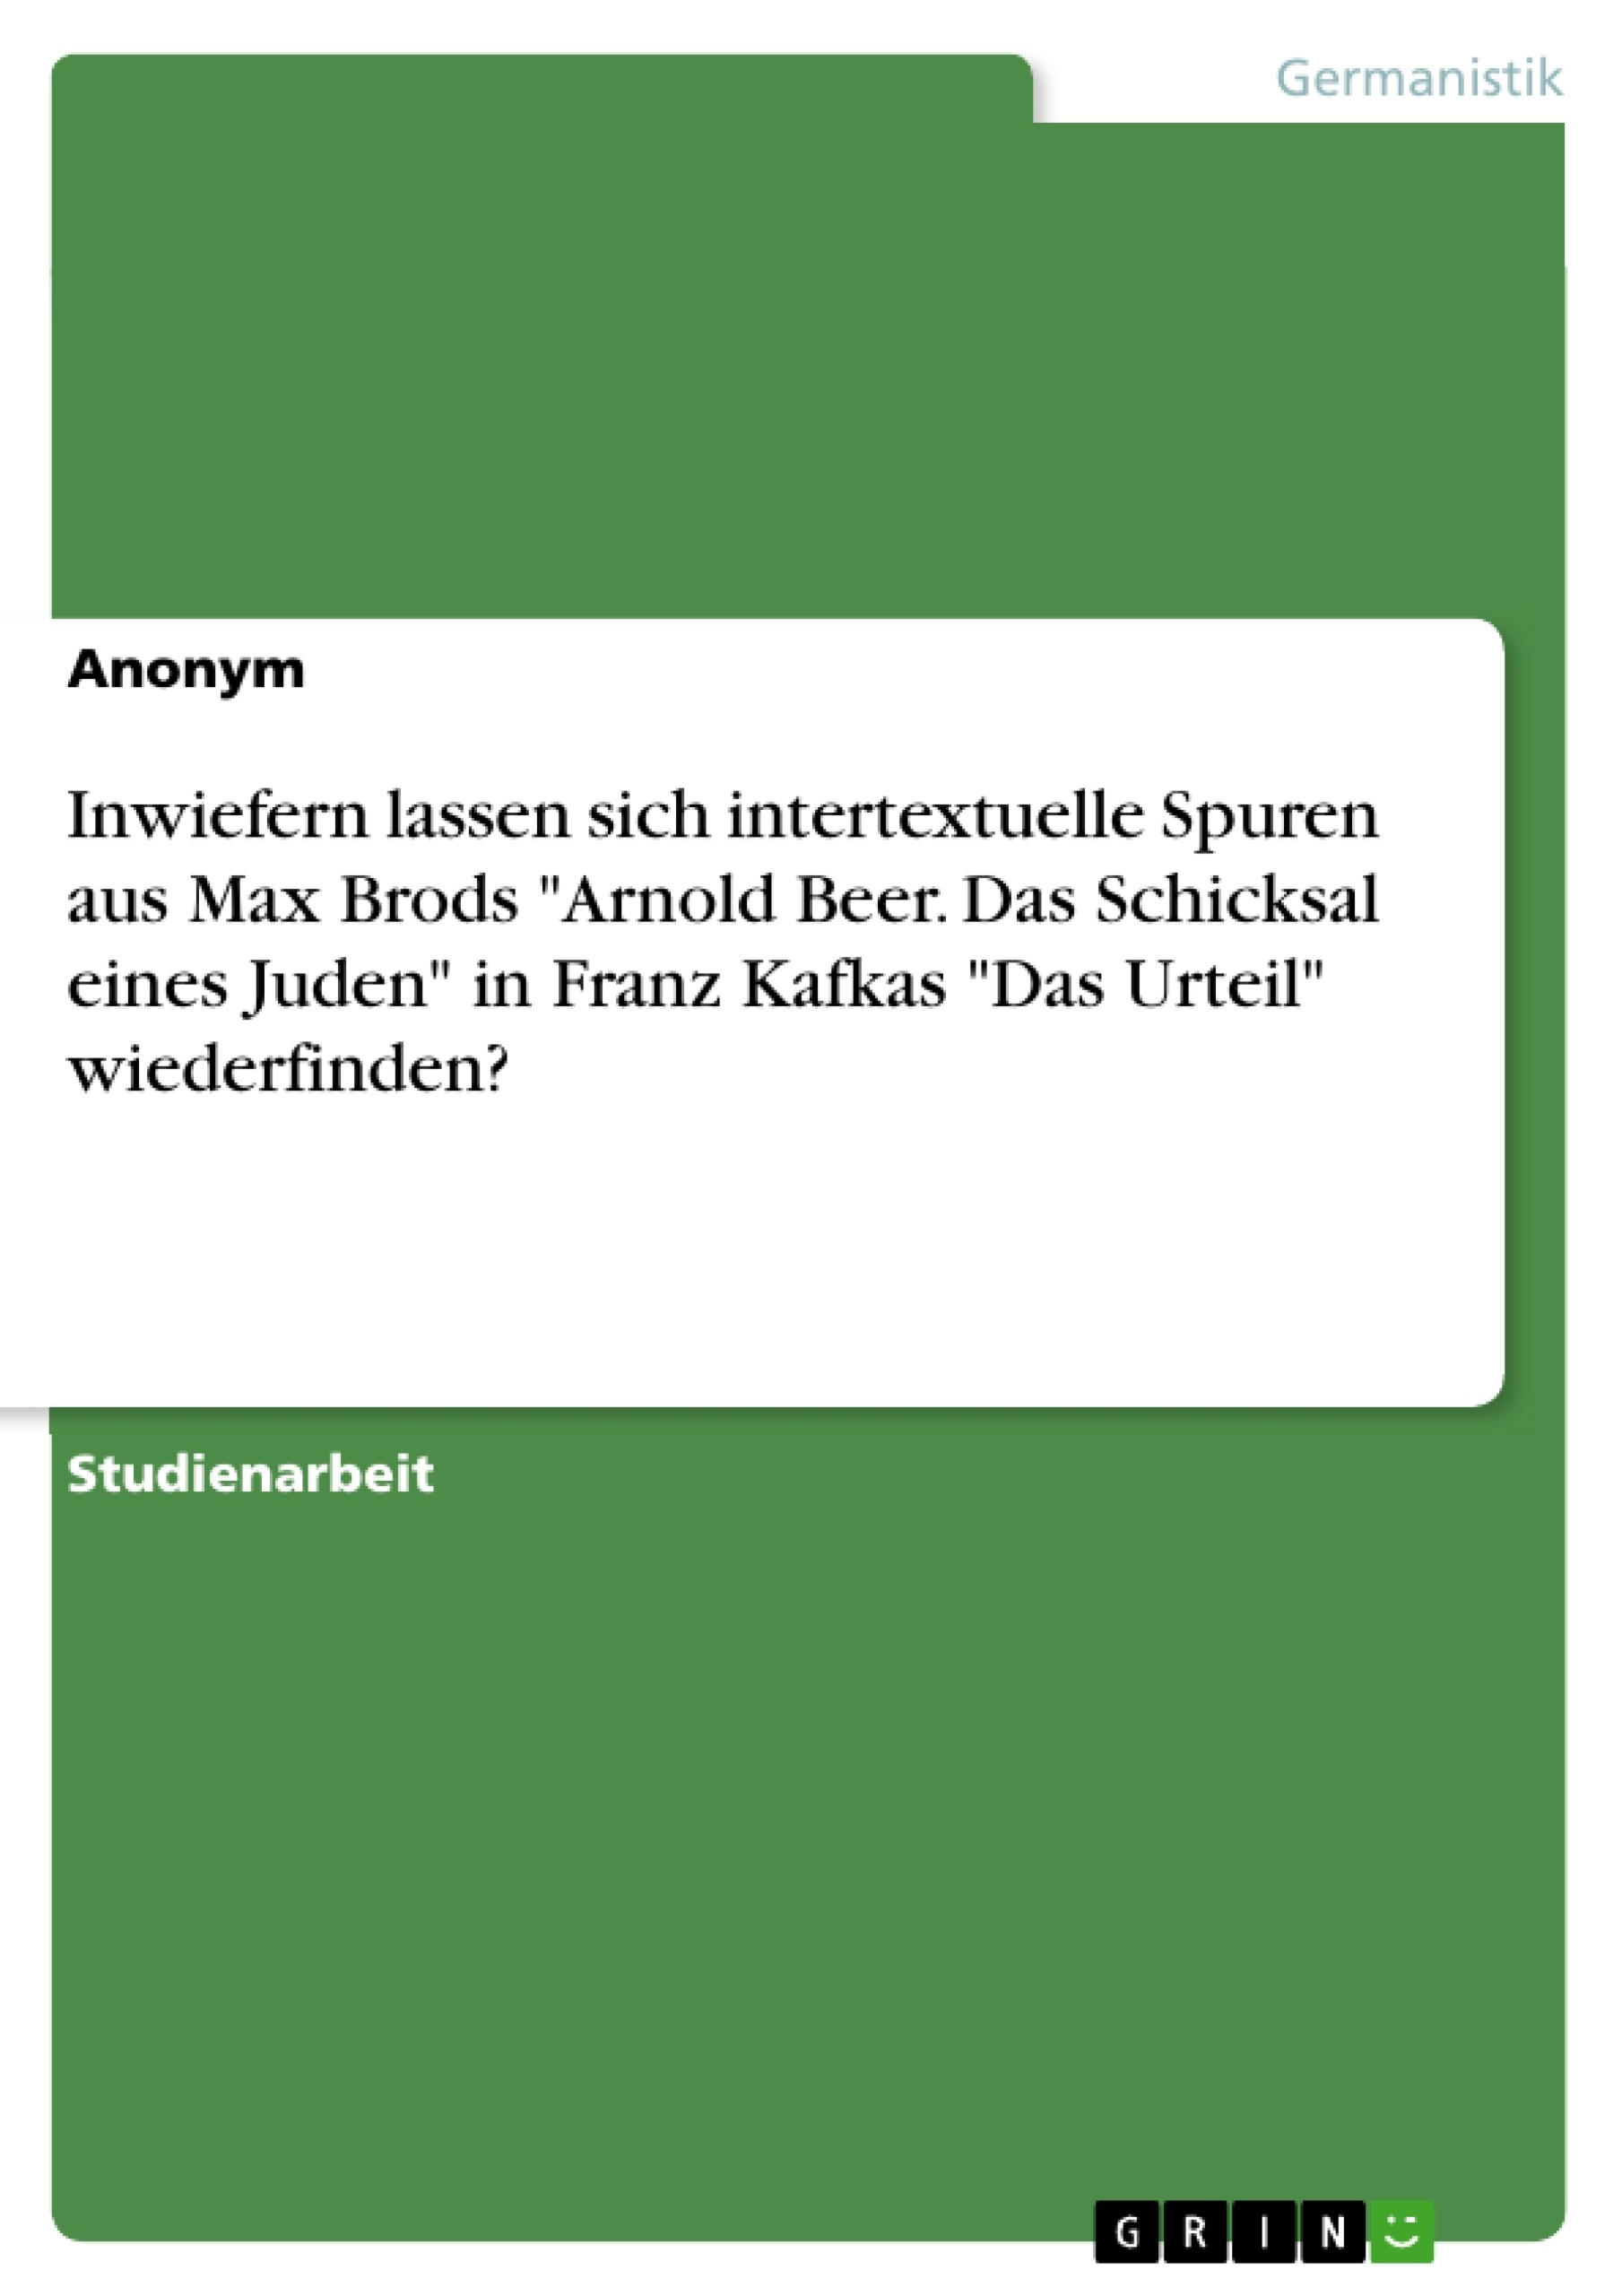 Titre: Inwiefern lassen sich intertextuelle Spuren aus Max Brods "Arnold Beer. Das Schicksal eines Juden" in Franz Kafkas "Das Urteil" wiederfinden?